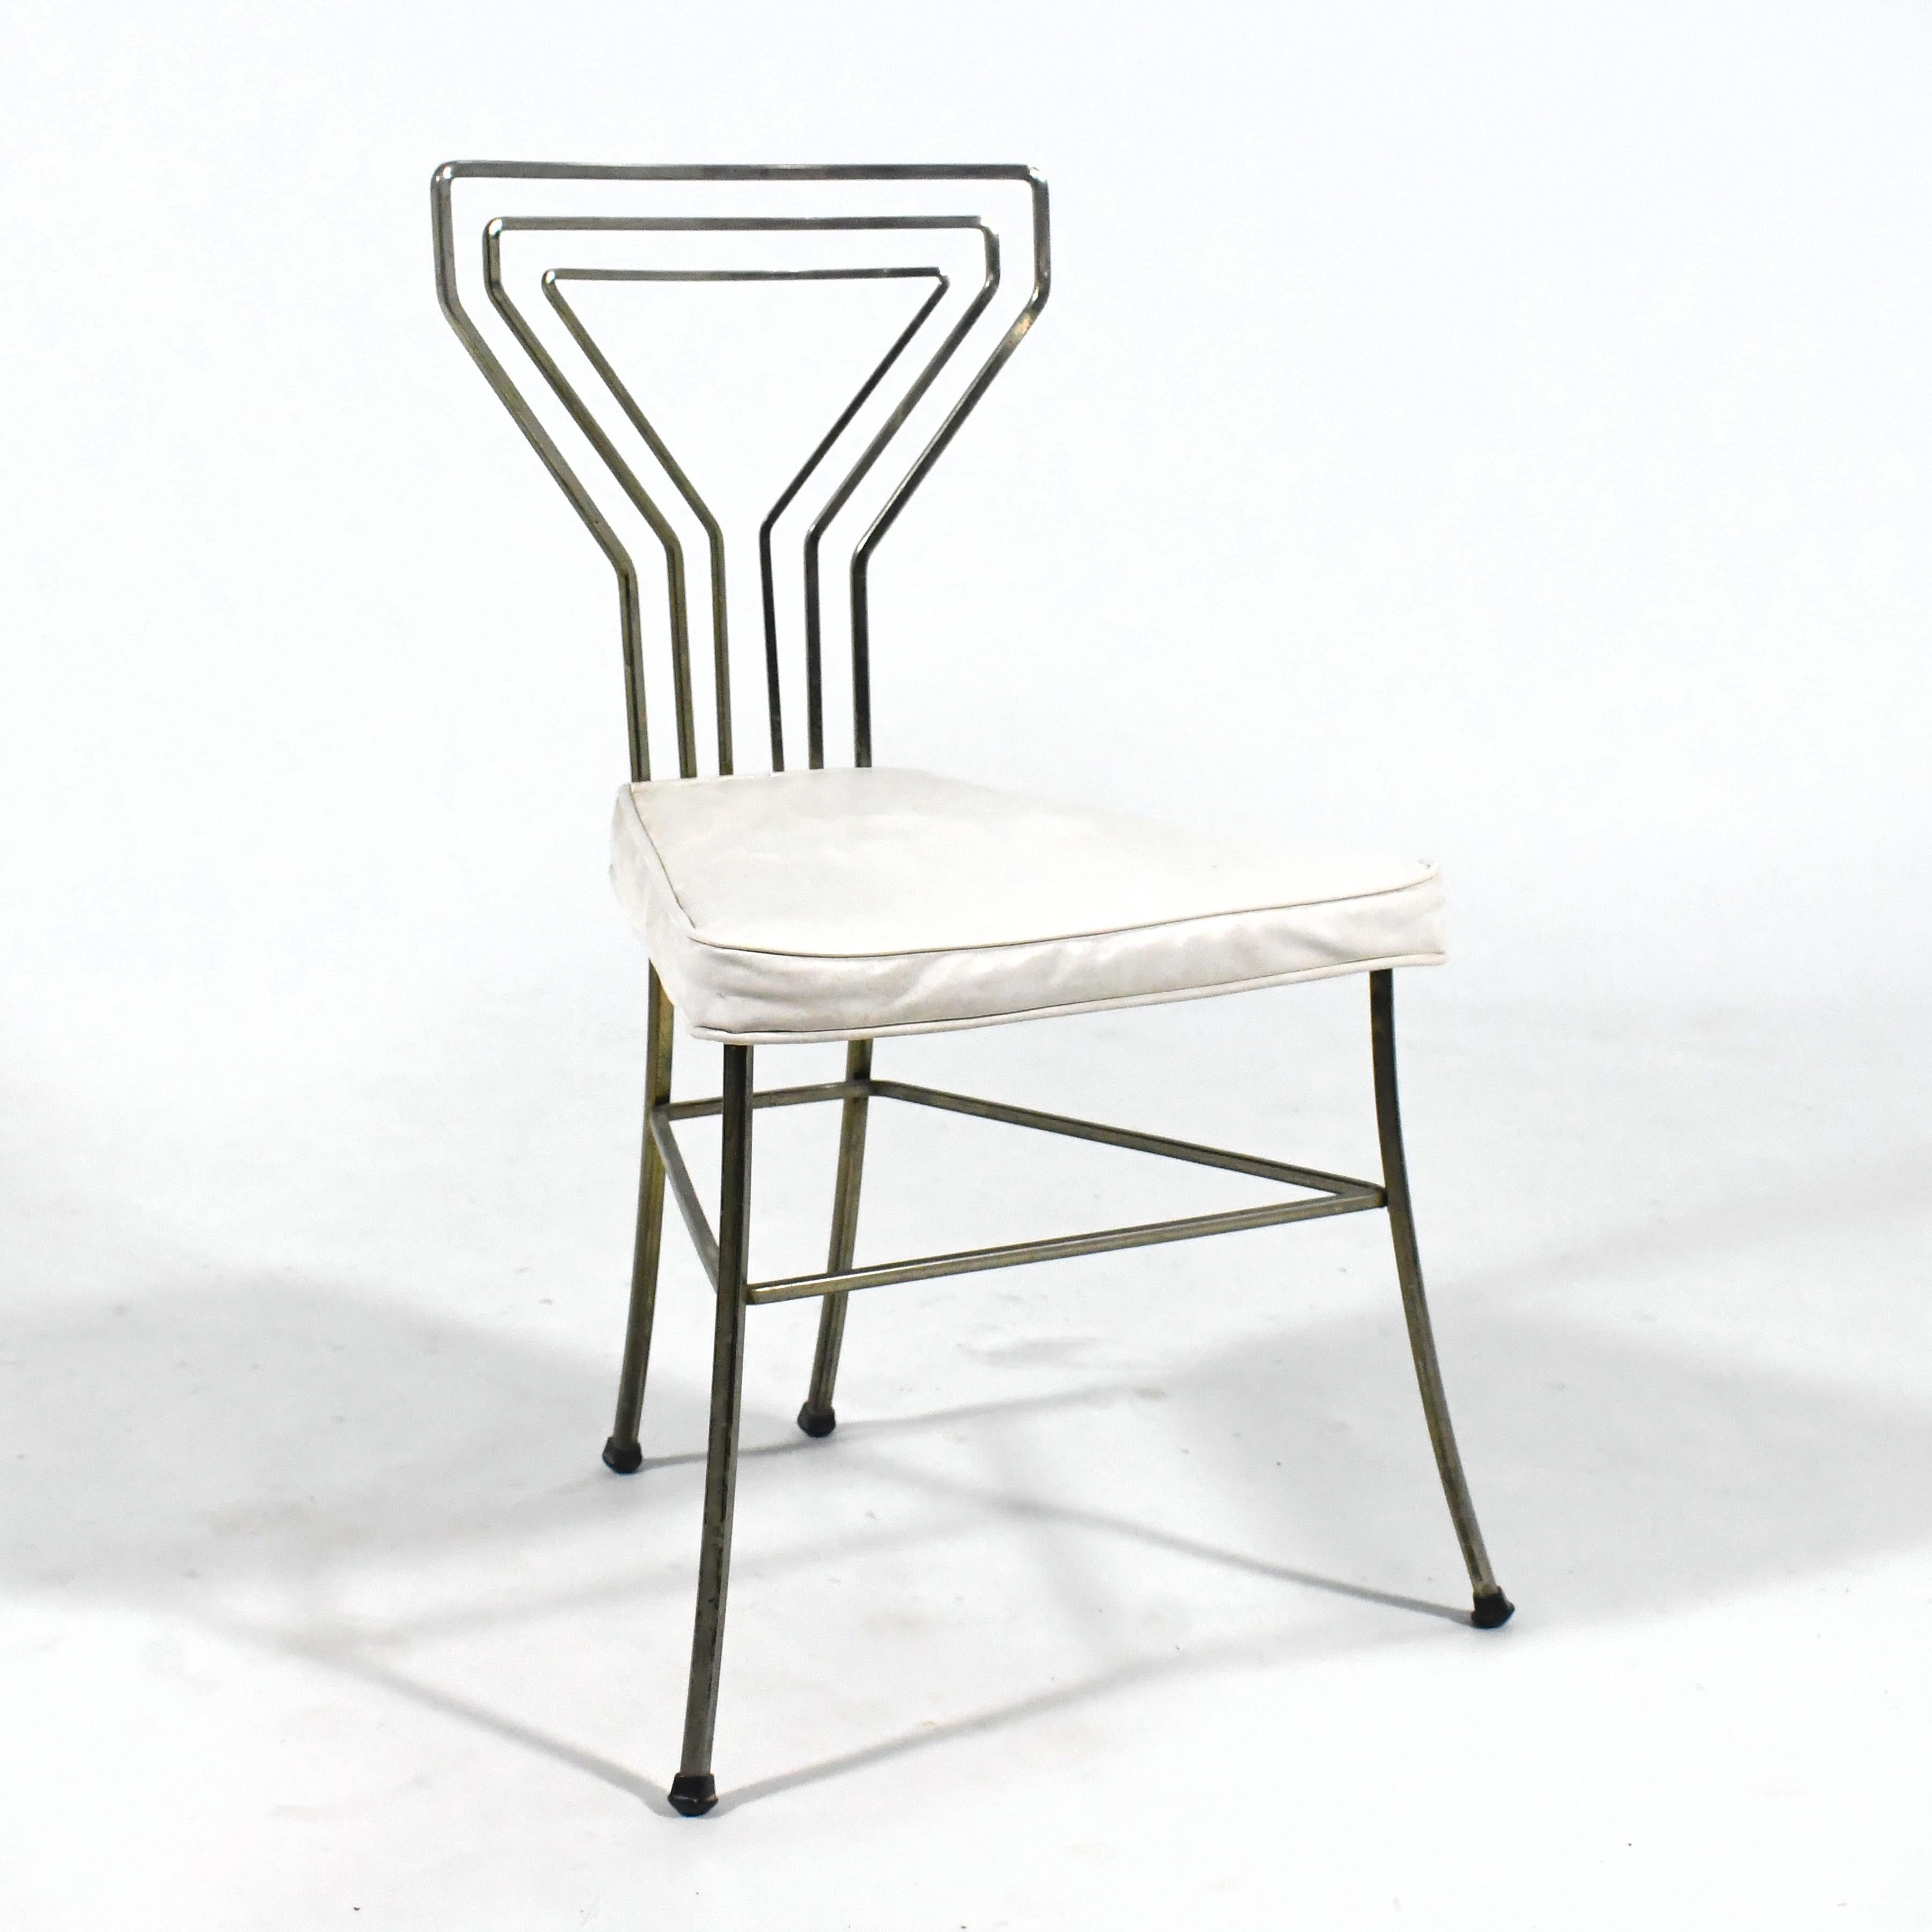 Design/One-Light des années 1950, cette chaise d'appoint est dotée d'un dossier dont le motif en crosse carrée courbée rappelle la forme d'un verre à martini.

31.55 